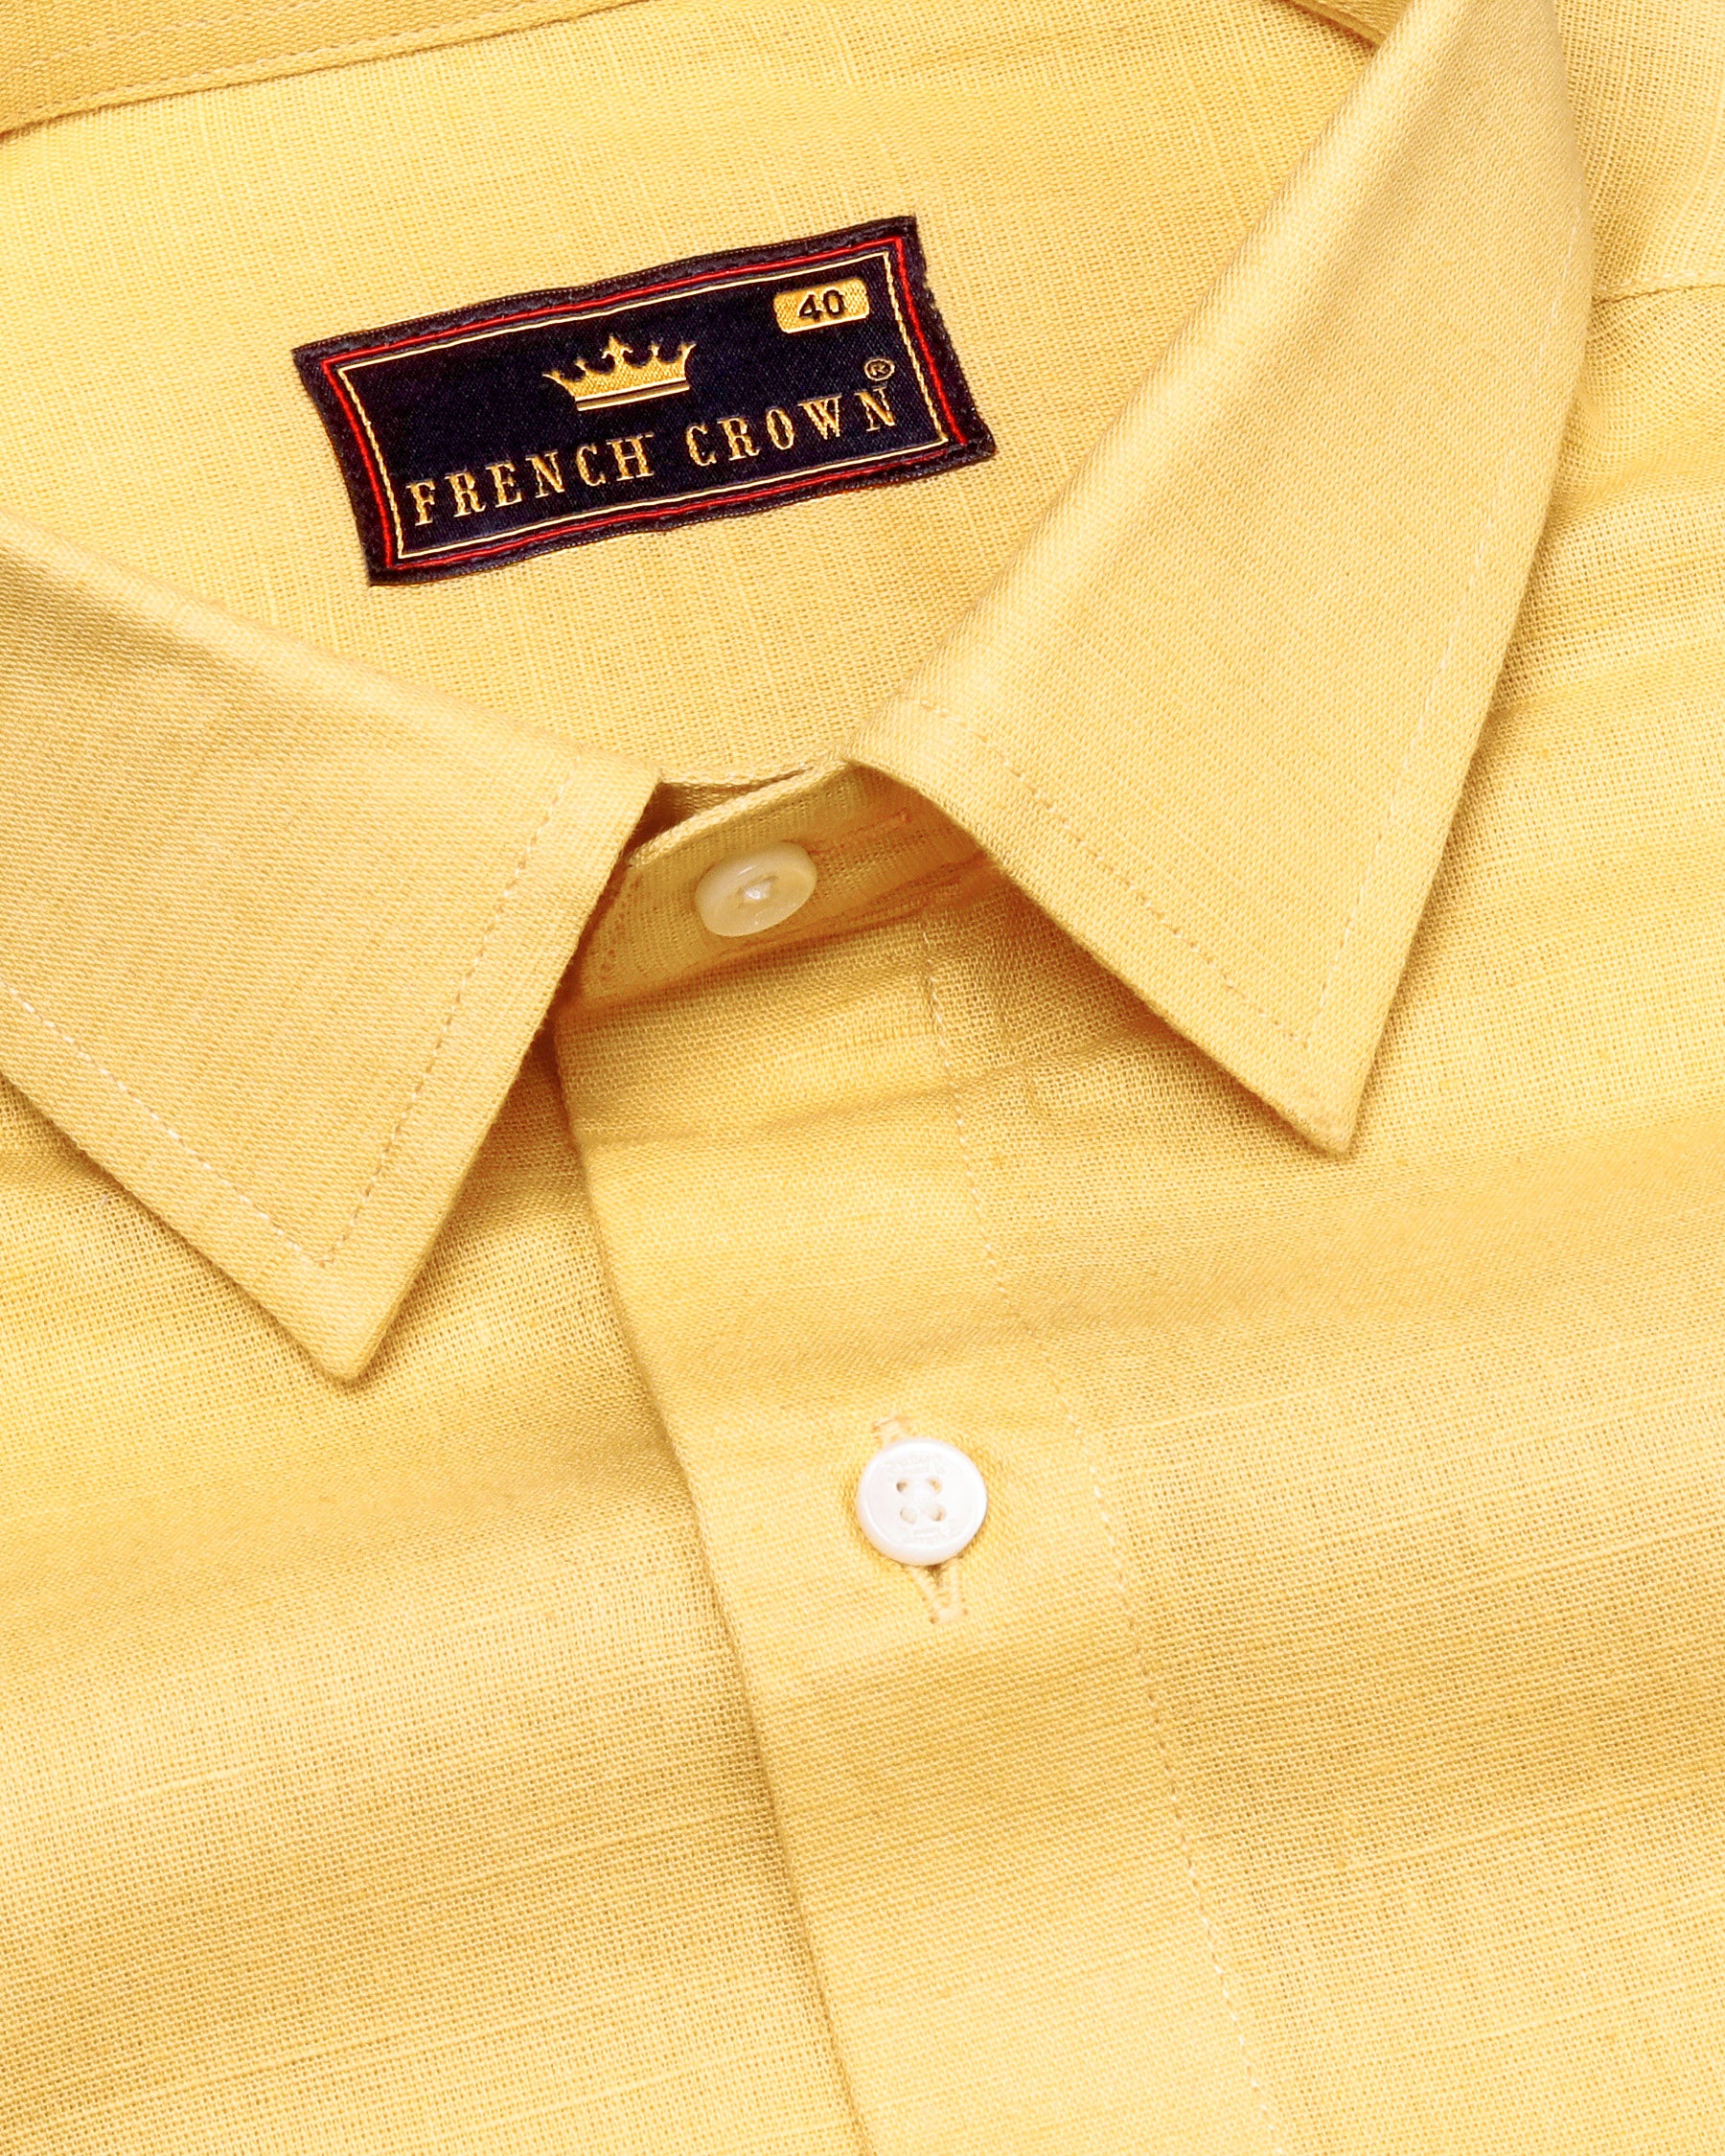 Cherokee Yellow Luxurious Linen Shirt 4560-H-48, 4560-50, 4560-H-50, 4560-H-52, 4560-38, 4560-H-38, 4560-39, 4560-H-39, 4560-40, 4560-H-40, 4560-42, 4560-H-42, 4560-44, 4560-H-44, 4560-46, 4560-H-46, 4560-48, 4560-52